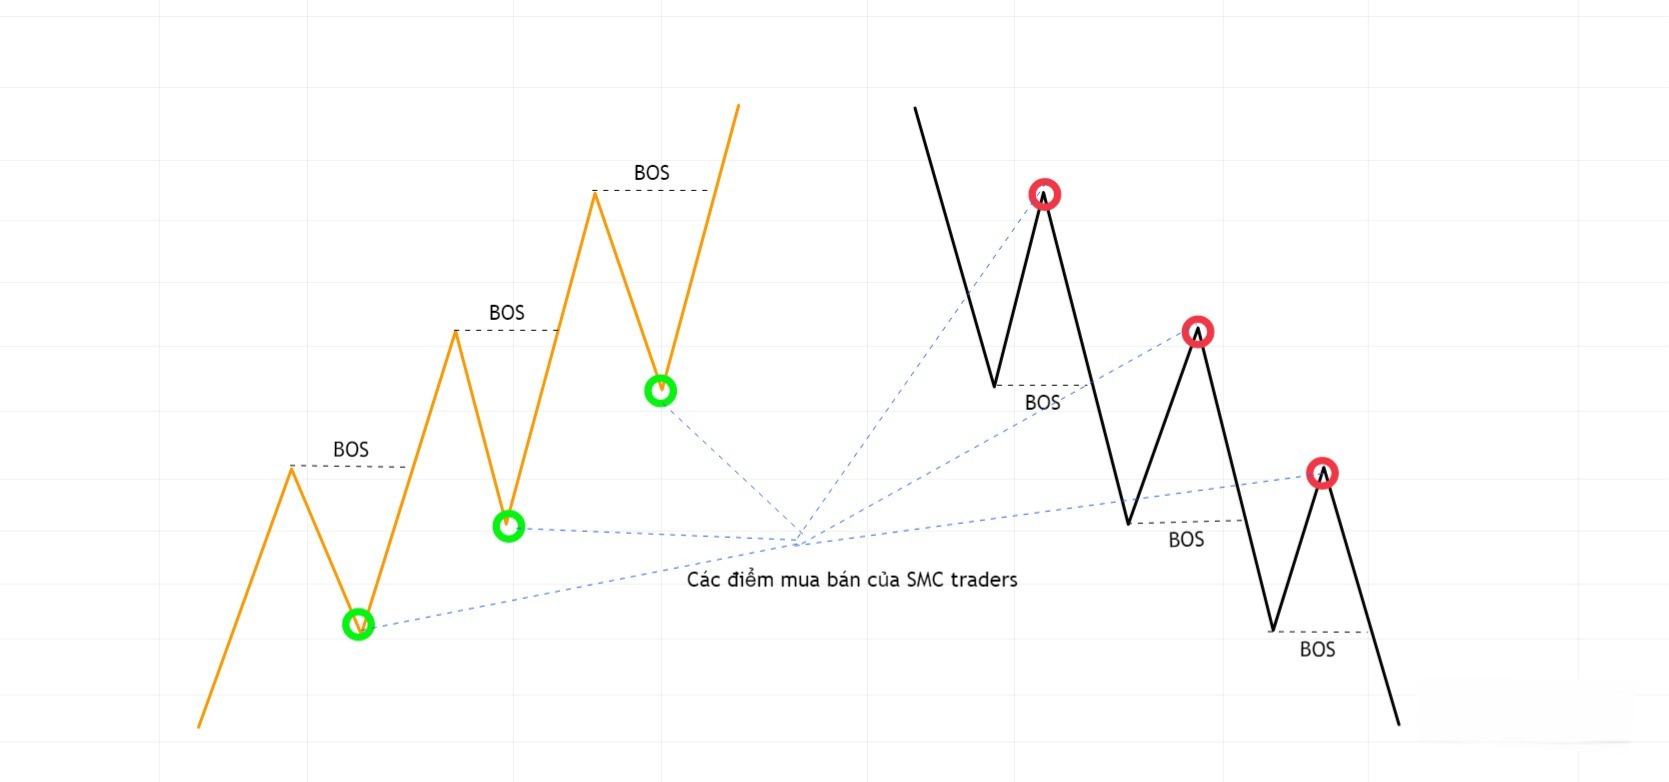 Hình 7. Điểm mua bán theo tín hiệu BOS của SMC traders.